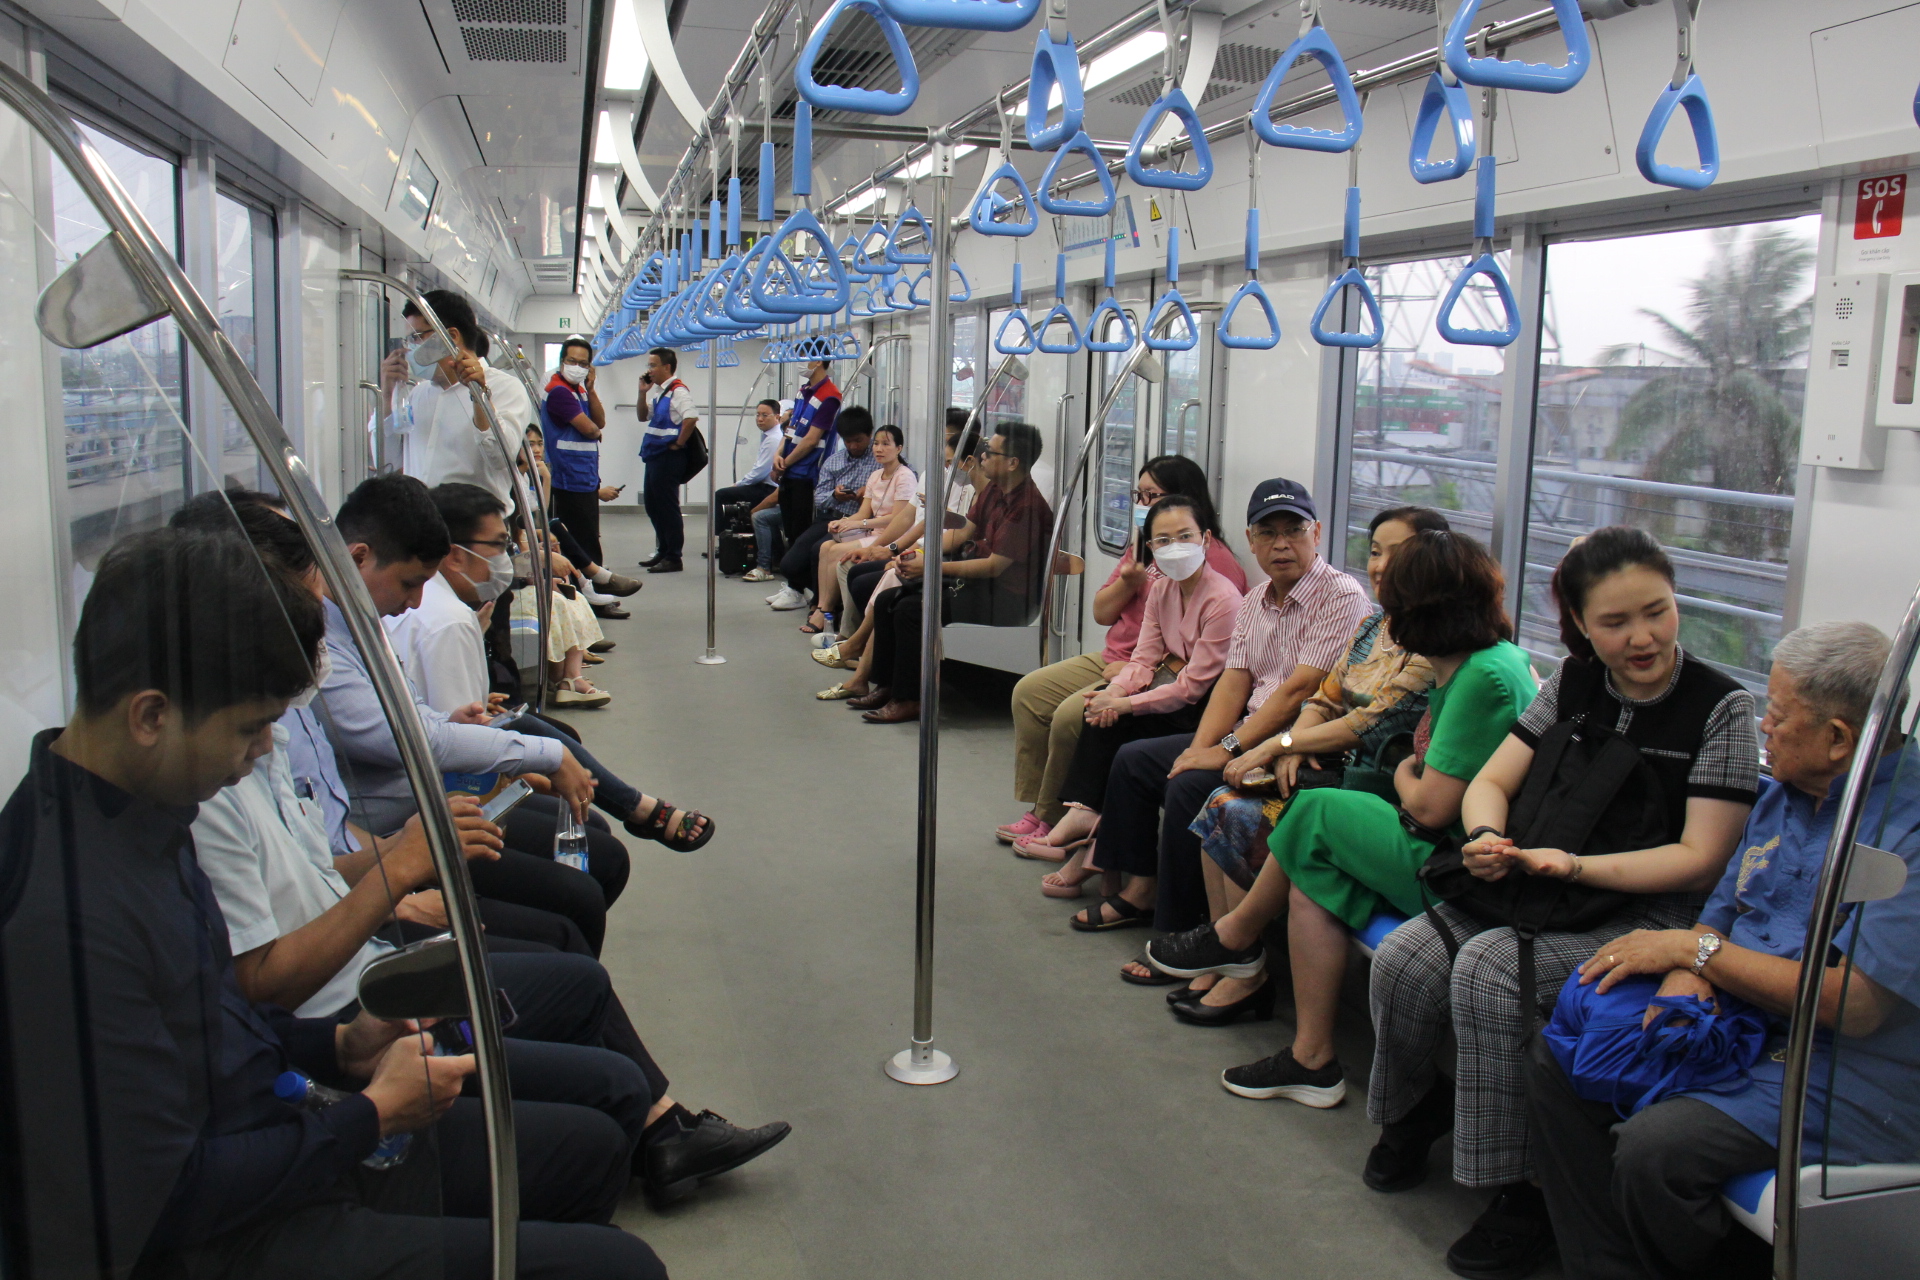 Metro số 1 chở gần 2.000 khách/ngày, chạy 20 phút từ Dĩ An đến Thảo Điền - Ảnh 1.